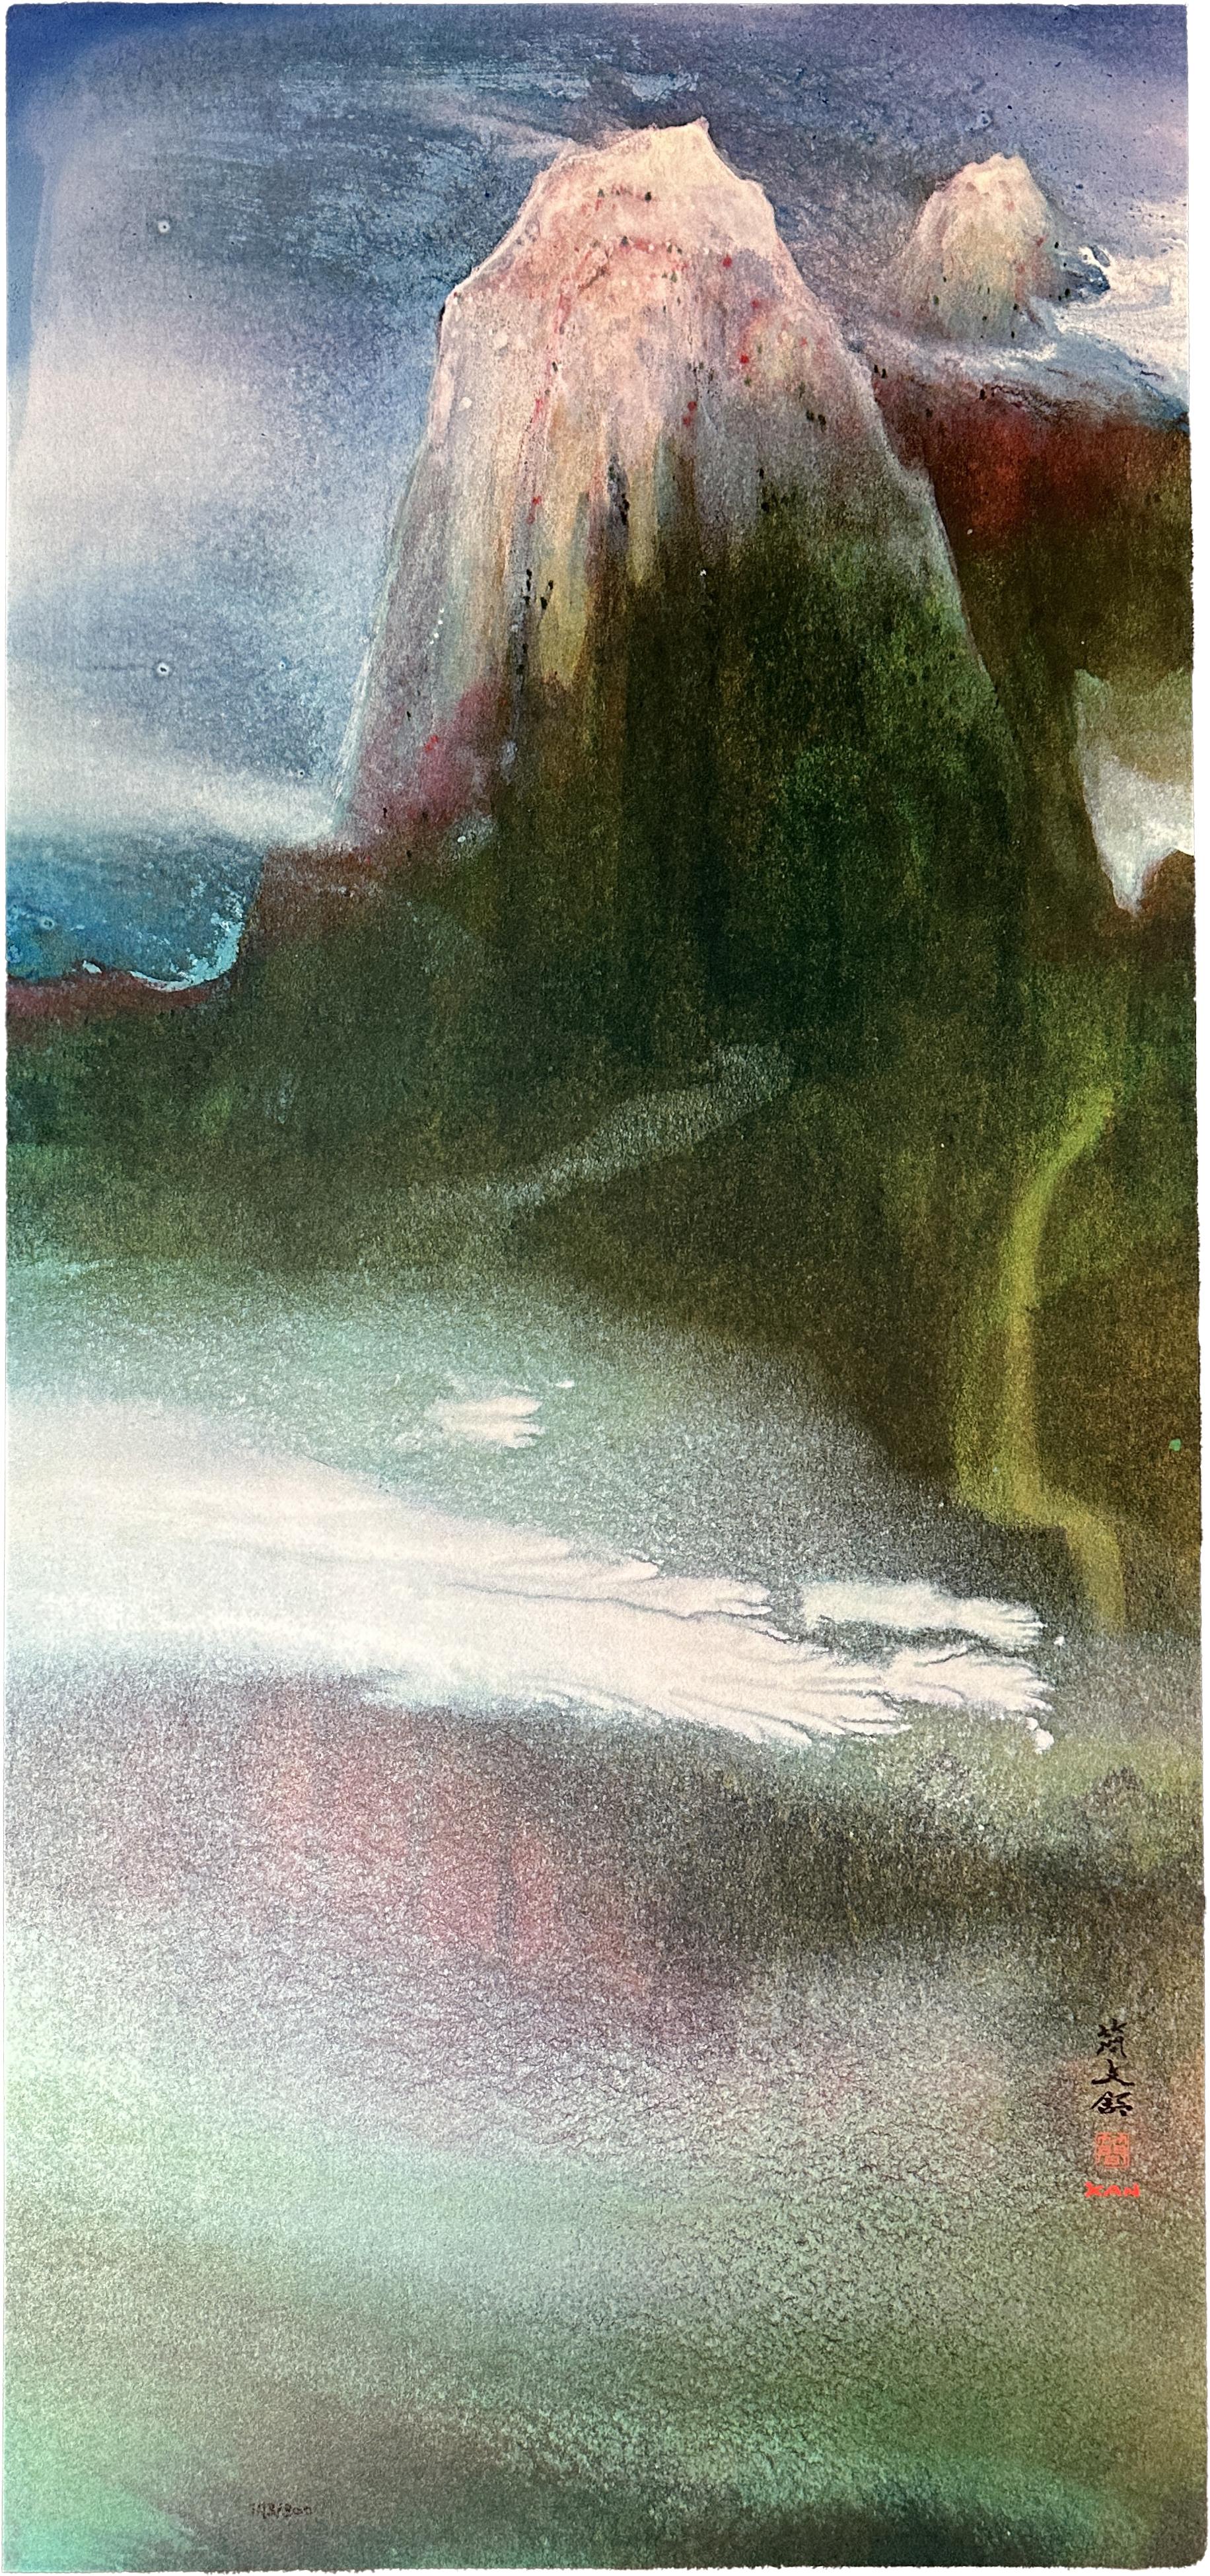 Landscape Print Diana Kan - Paysage fantastique 1990, édition limitée 